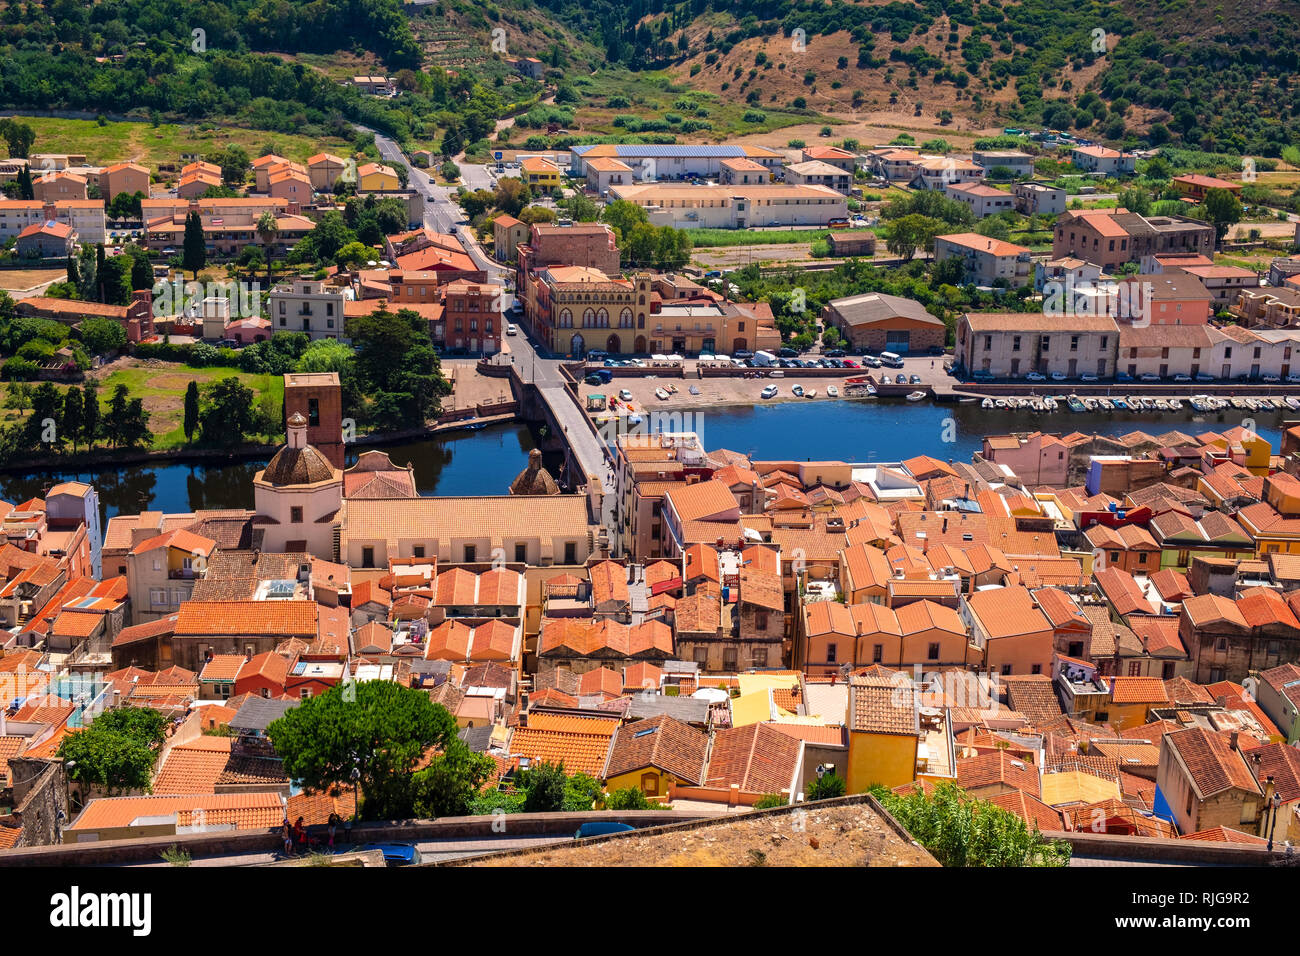 Bosa, Sardegna / Italia - 2018/08/13: vista panoramica della città di Bosa dal fiume Temo e colline circostanti visto dal castello Malaspina hill Foto Stock